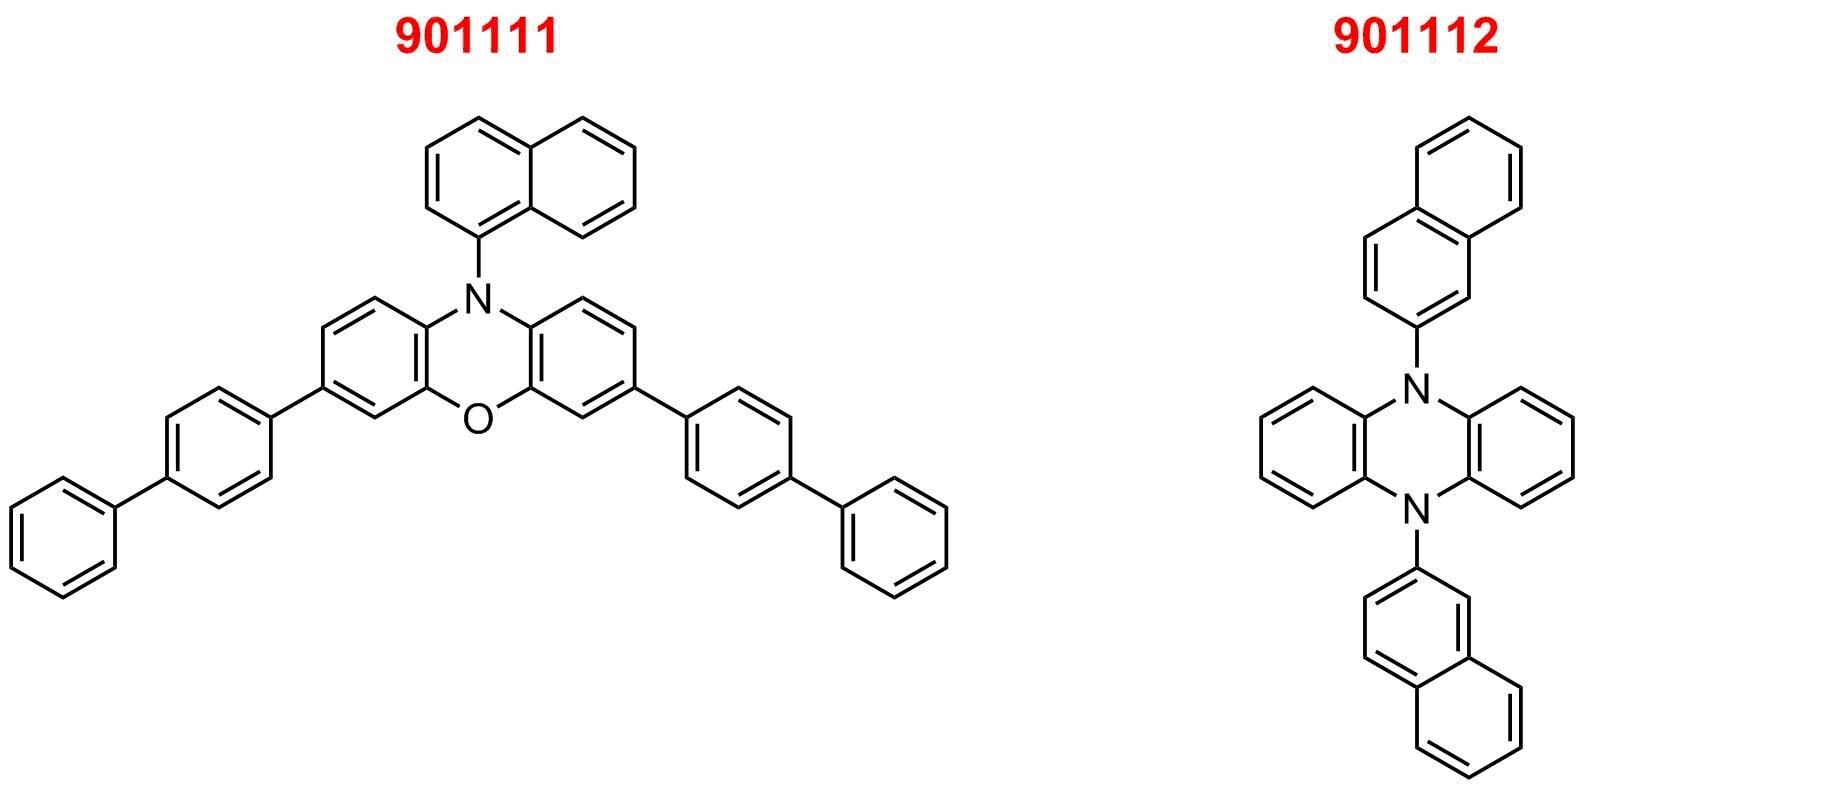 Phenoxazine (901111) and dihydrophenazine (901112) organic photoredox catalysts